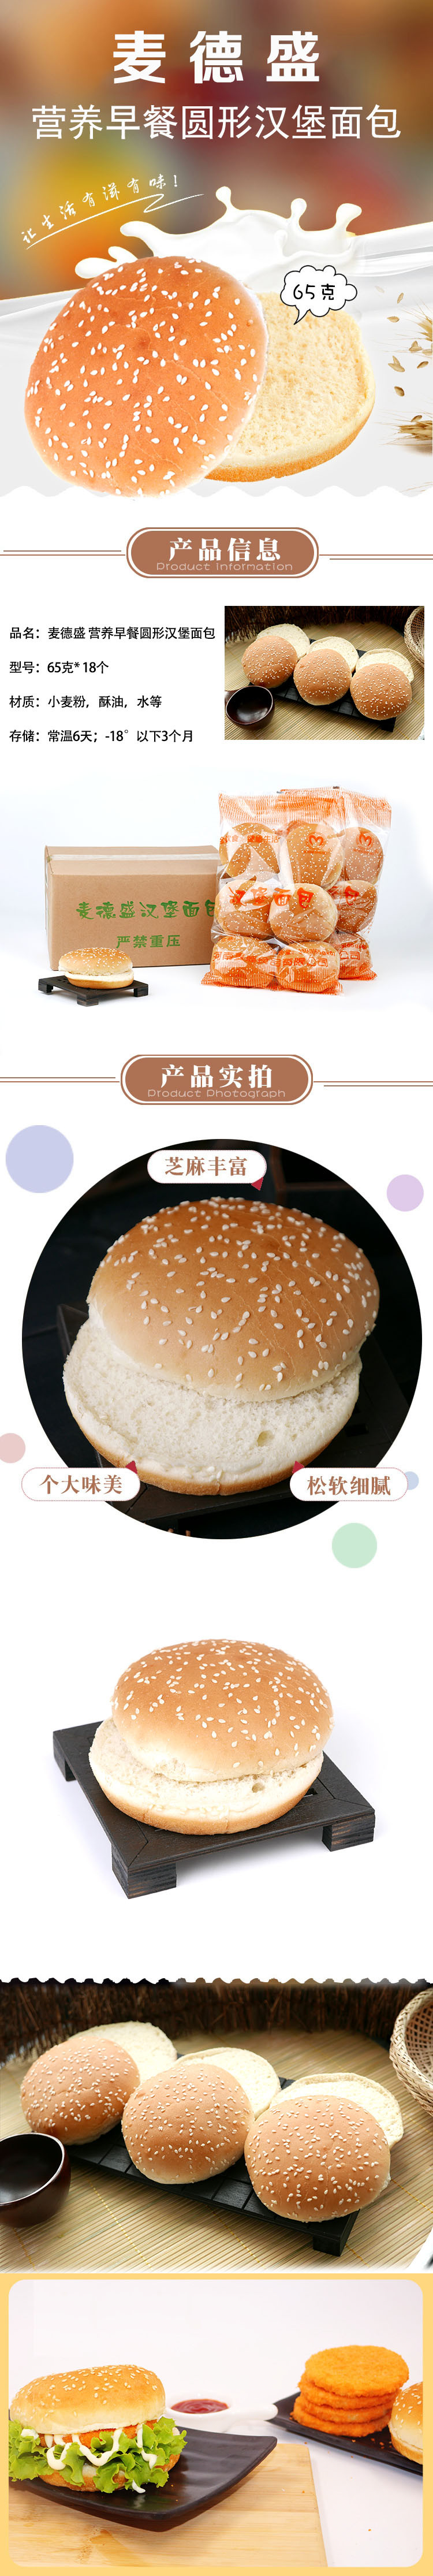 麦德盛 营养早餐圆形汉堡面包 65克* 18个 圆形汉堡包早餐食品DIY健康营养面包